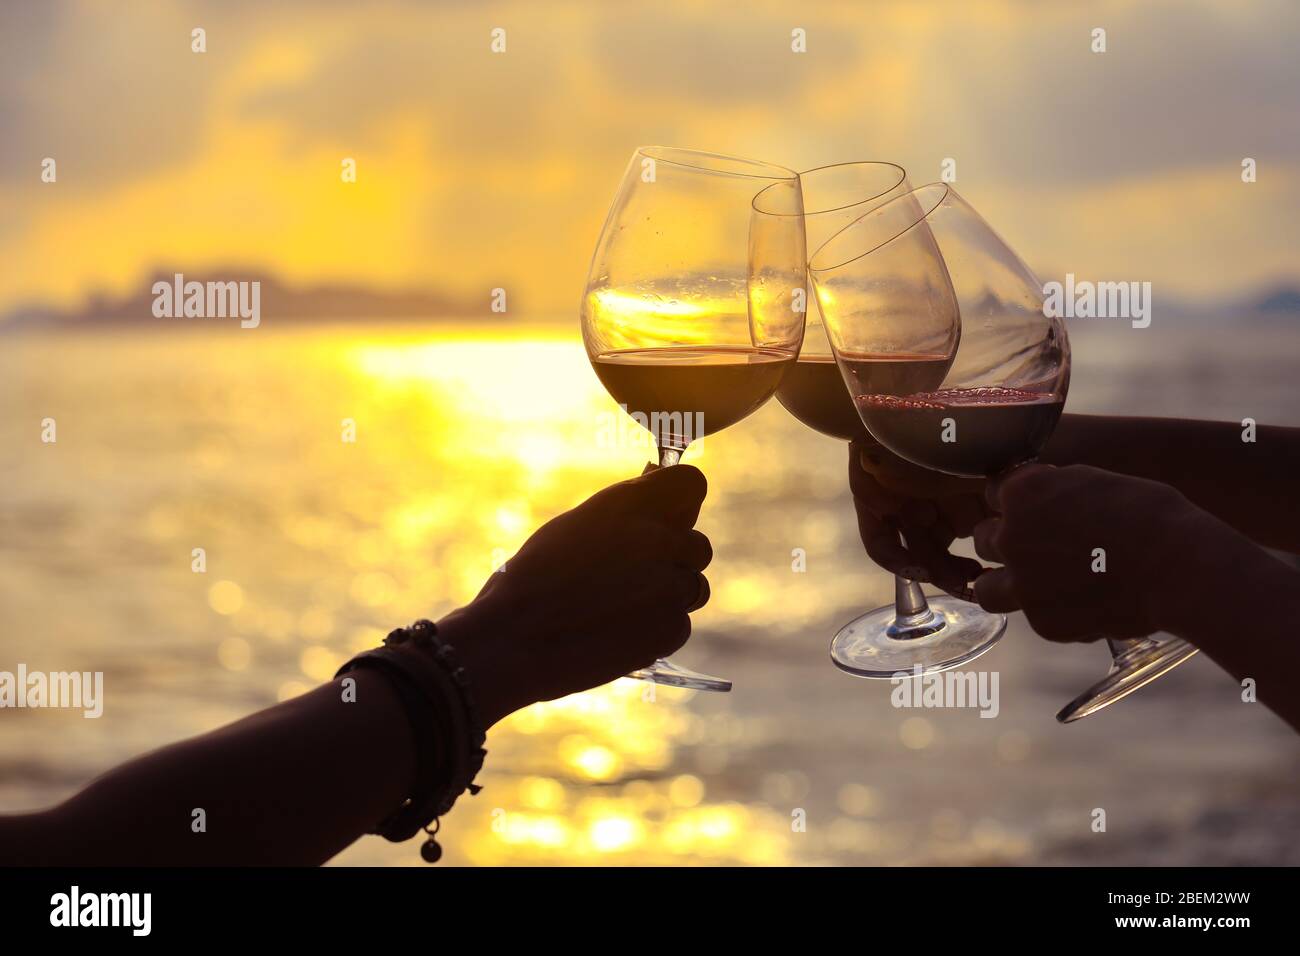 Primo piano con le mani che tengono il bicchiere di vino rosso sul balcone durante il tramonto, concetto di celebrazione Foto Stock